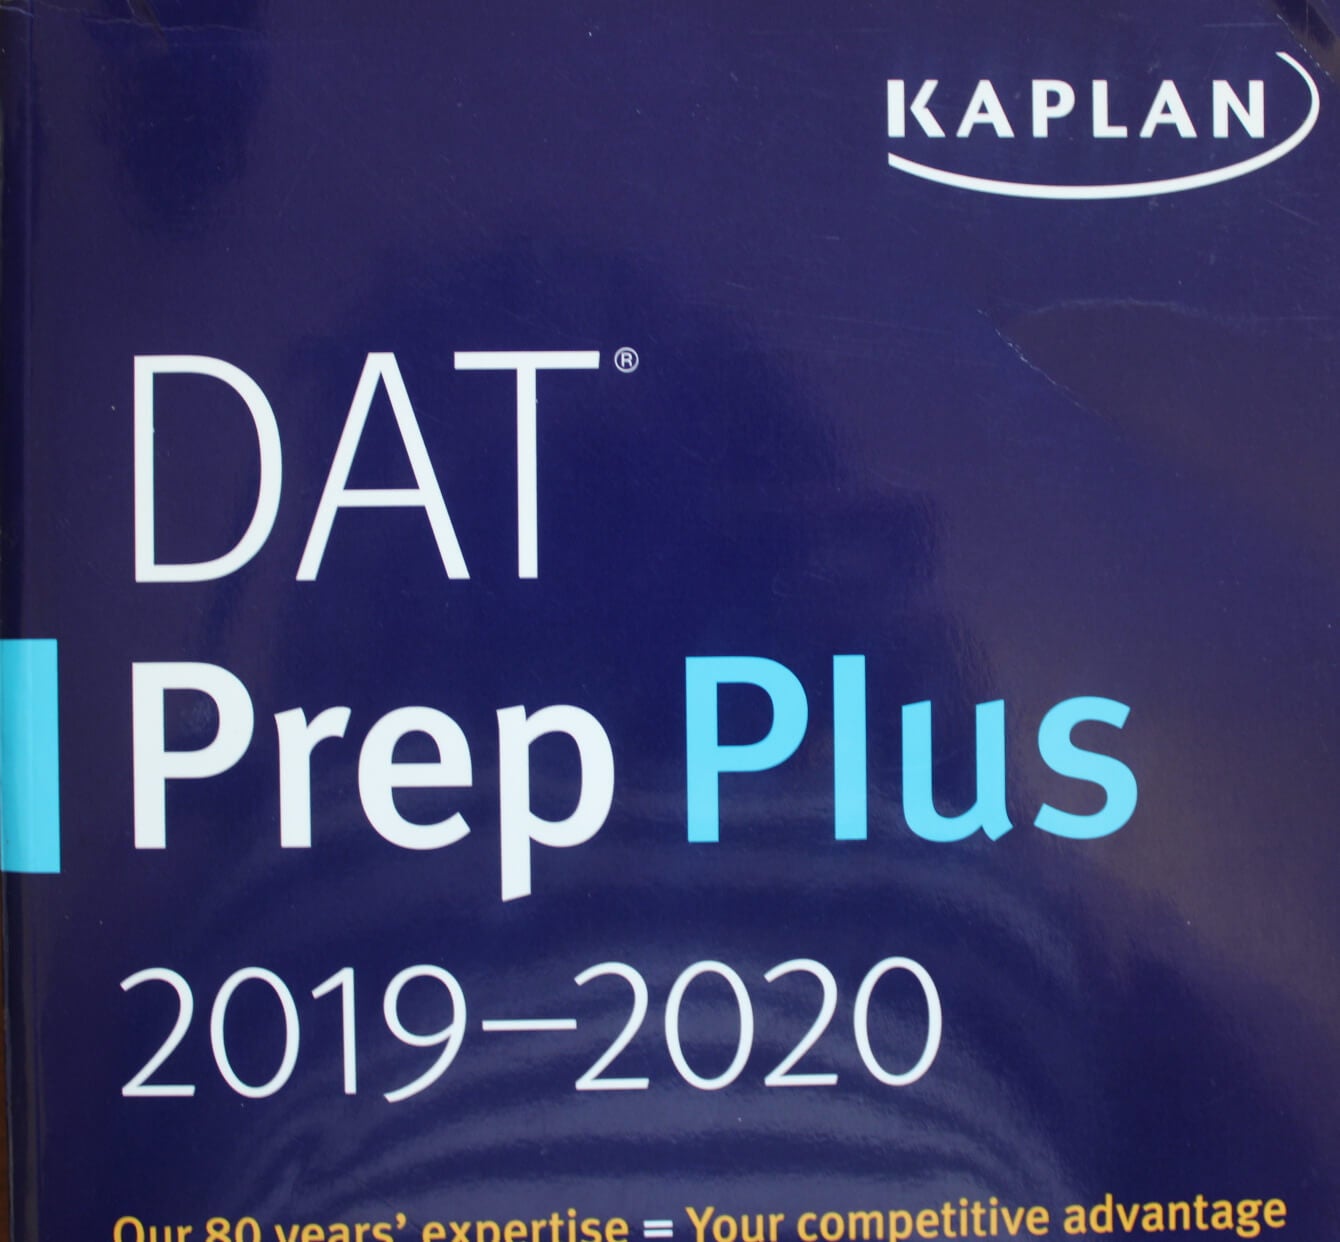 DAT Prep Plus Kaplan